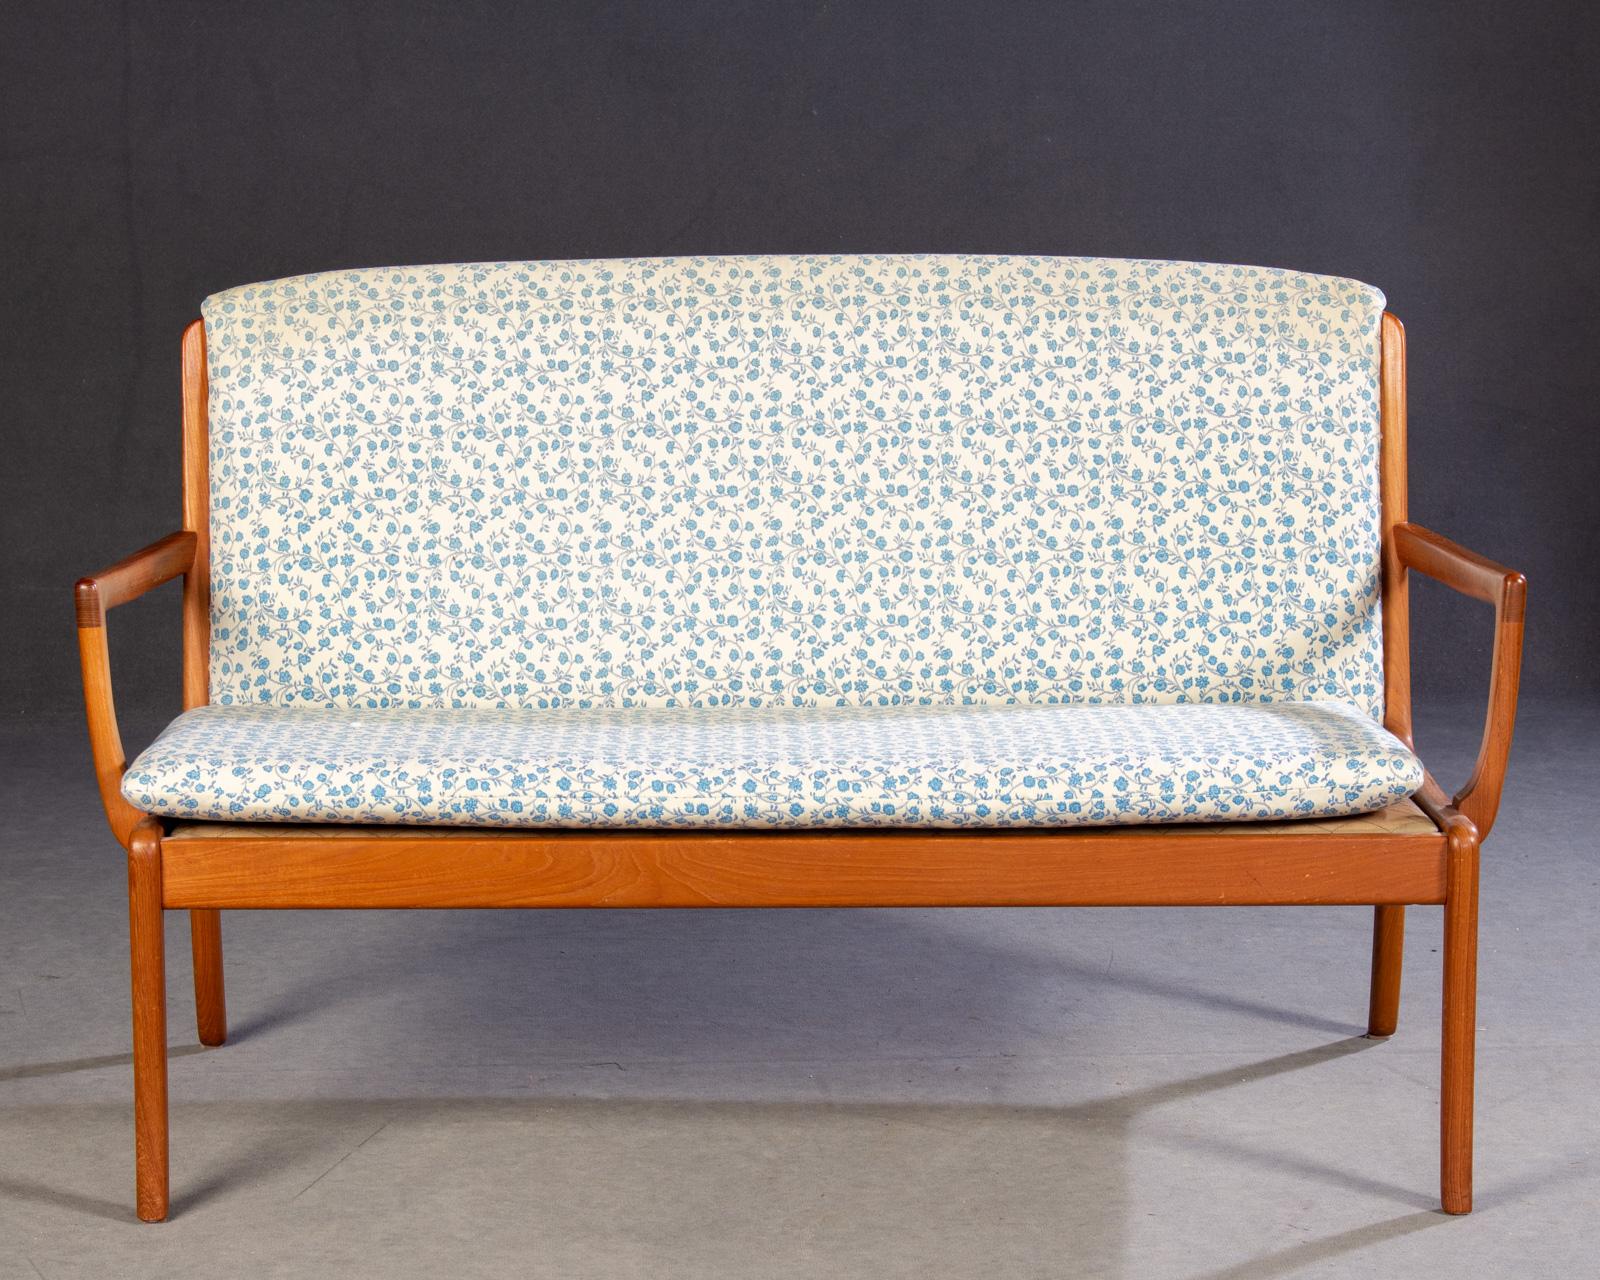 Sofa aus Mahagoniholz, entworfen von Ole Wanscher und hergestellt von Cado.

Das elegante Sofa zeichnet sich durch organische Formen und hervorragende Verarbeitung mit vielen kleinen Details aus.

Das Sofa wurde von unserem Möbelschreiner